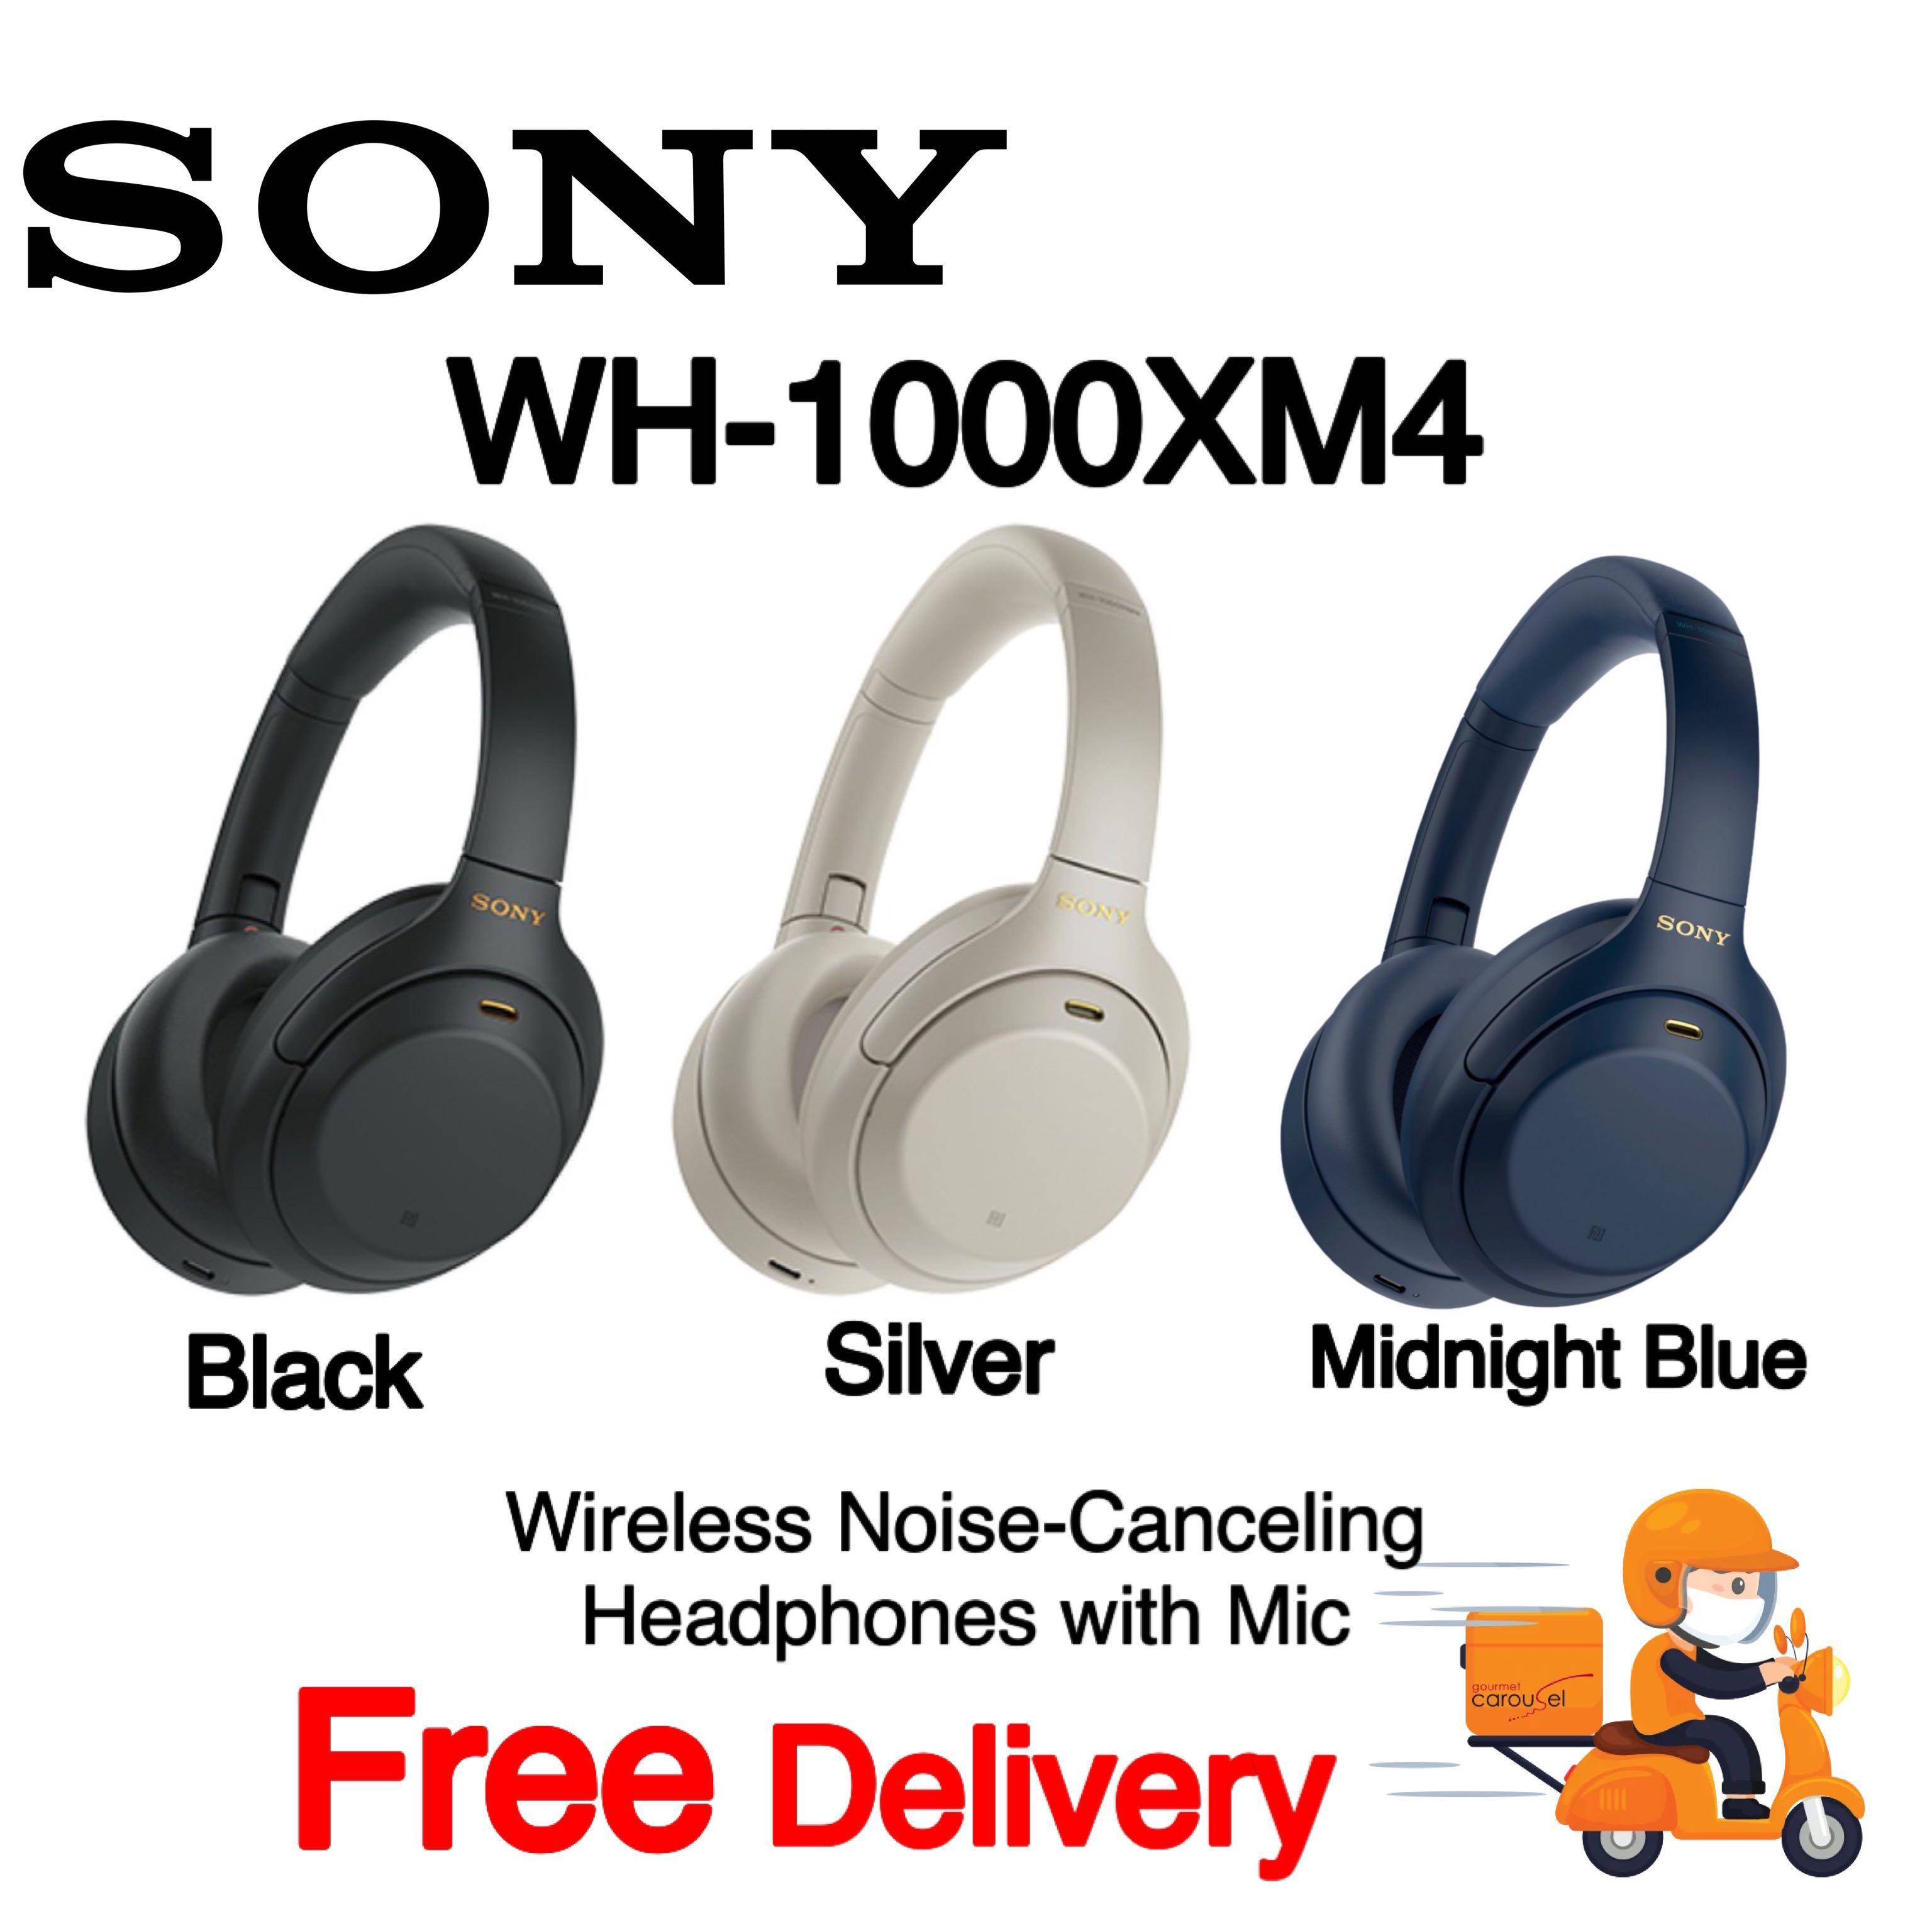 売れ筋ショッピング SONY WH-1000XM4 blue midnight ヘッドフォン